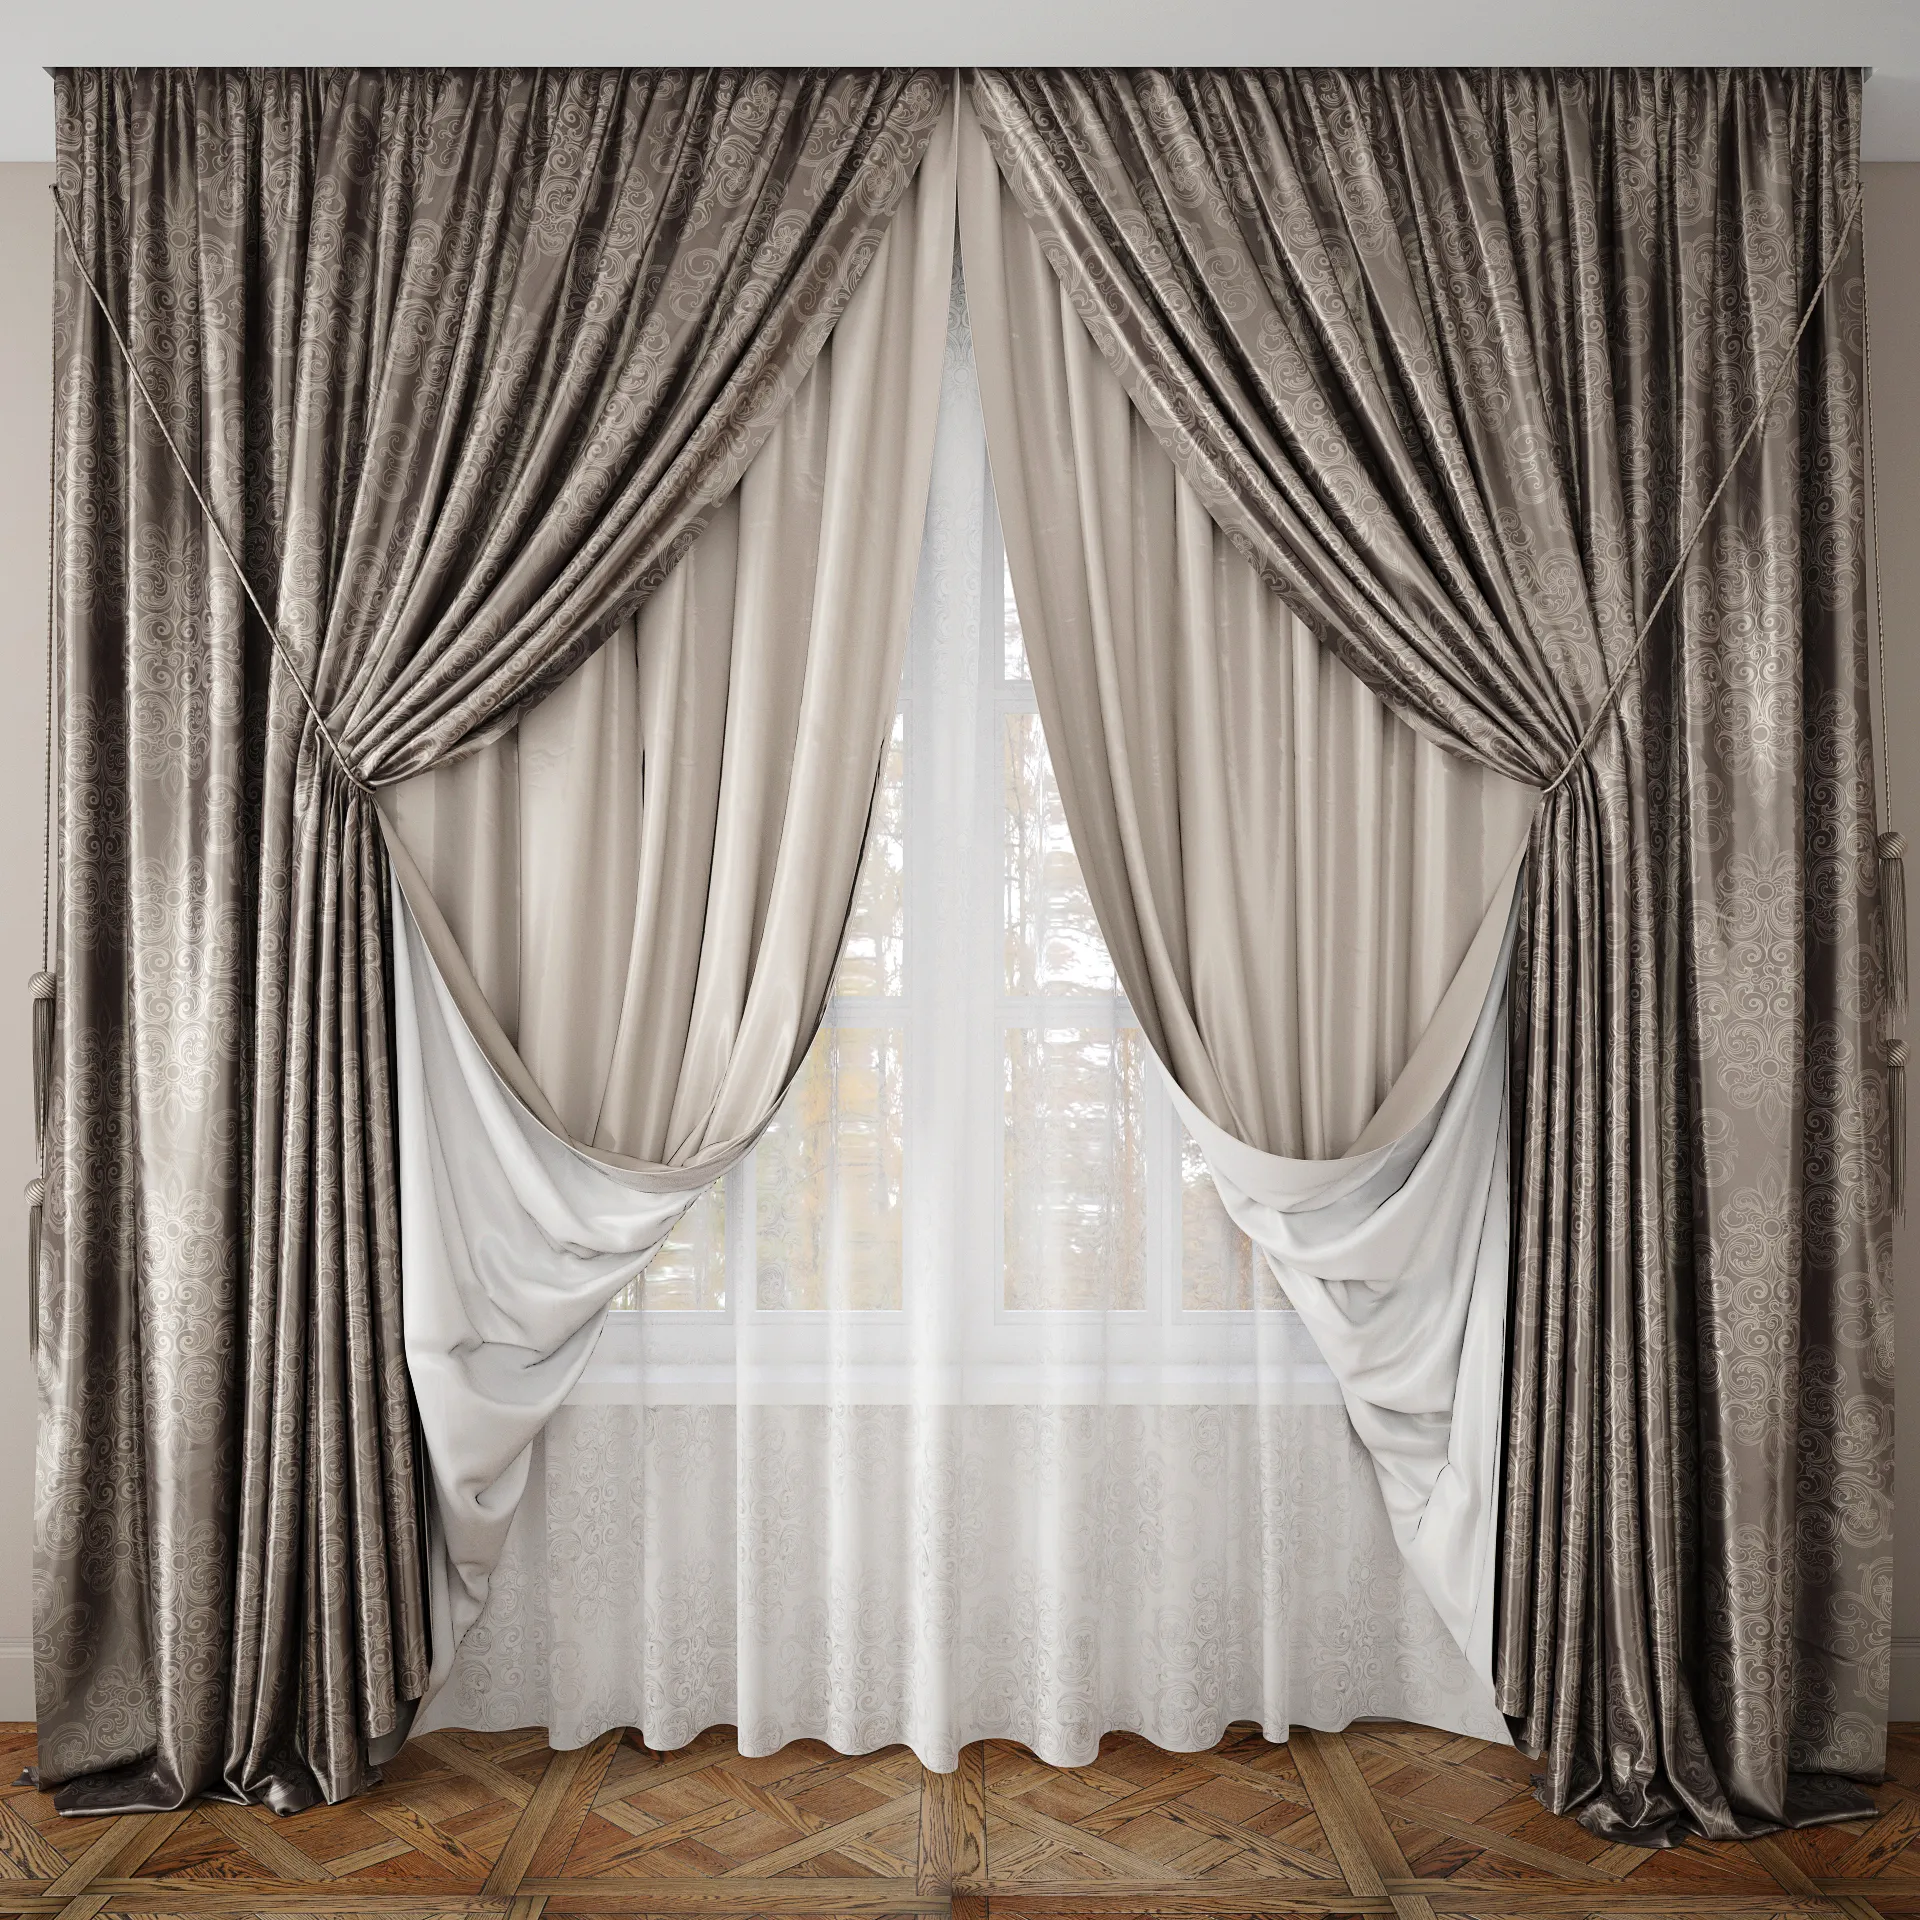 3dsky - Curtain 50 - Curtain - 3D model